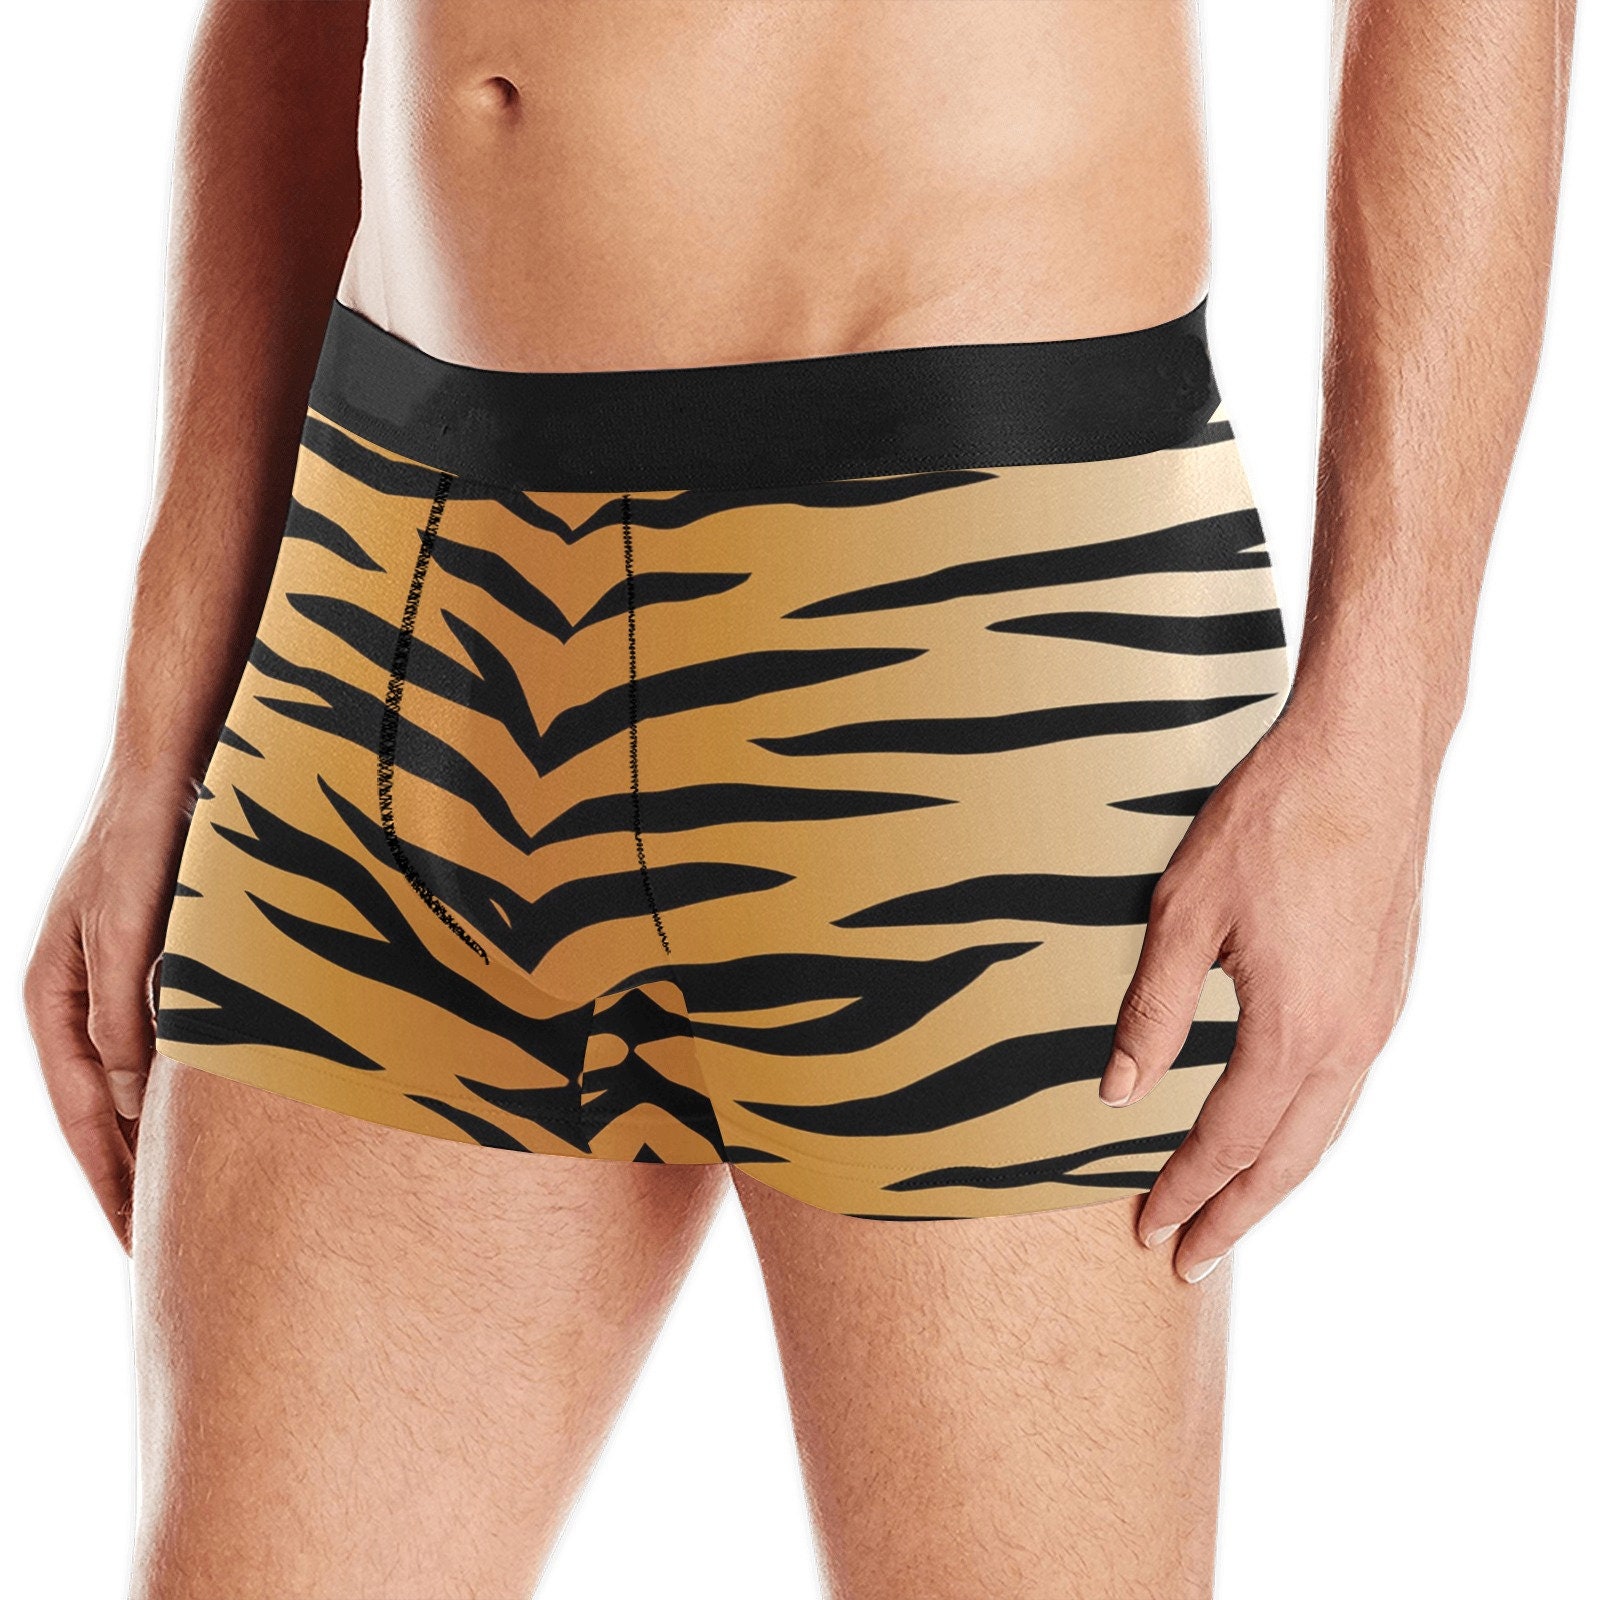 Tiger Underwear -  Singapore